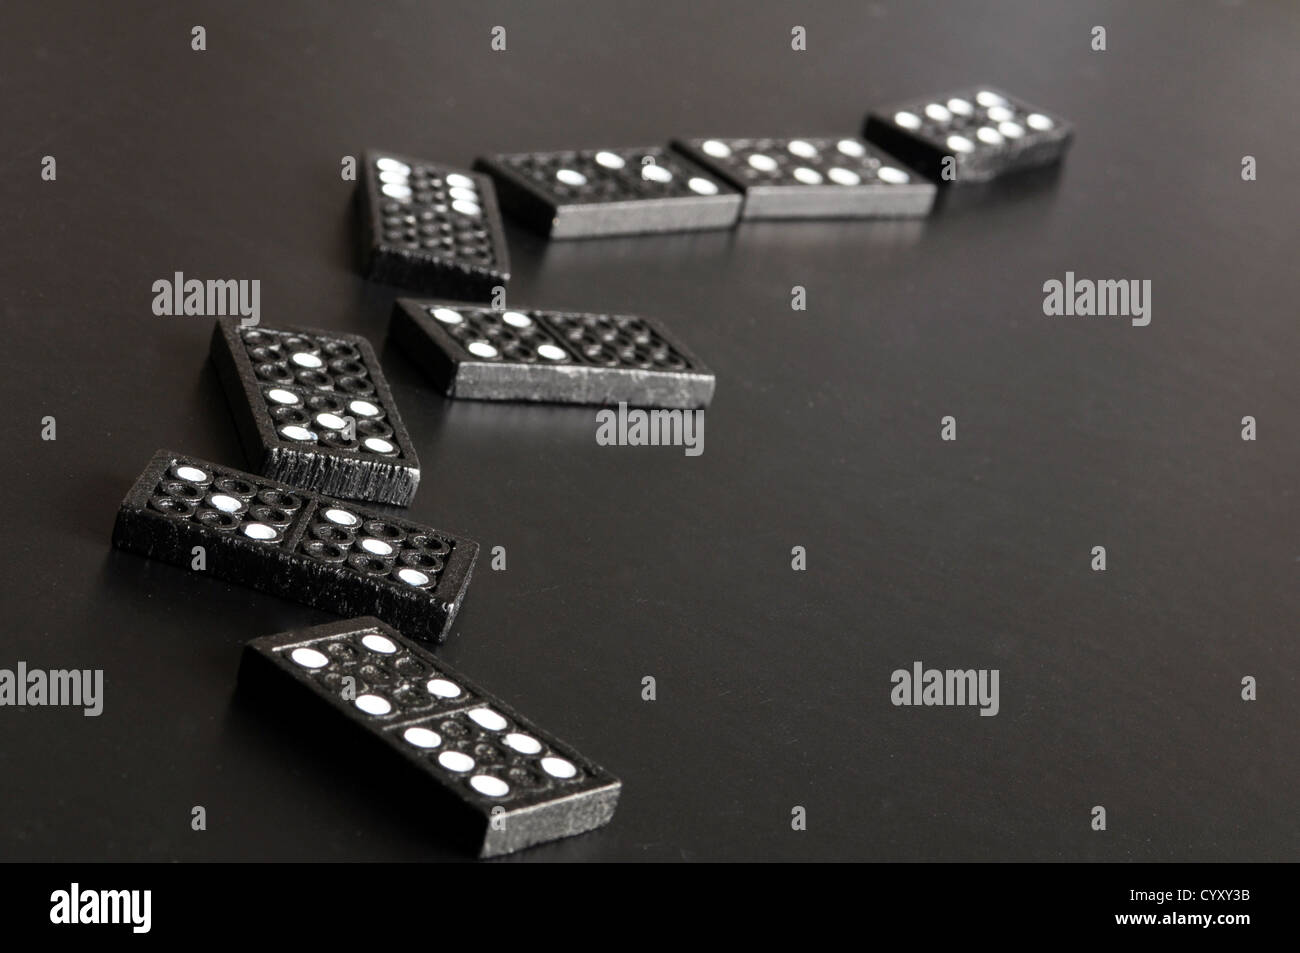 Finanzkrise-Konzept mit Domino-Spiel auf schwarzem Hintergrund Stockfoto